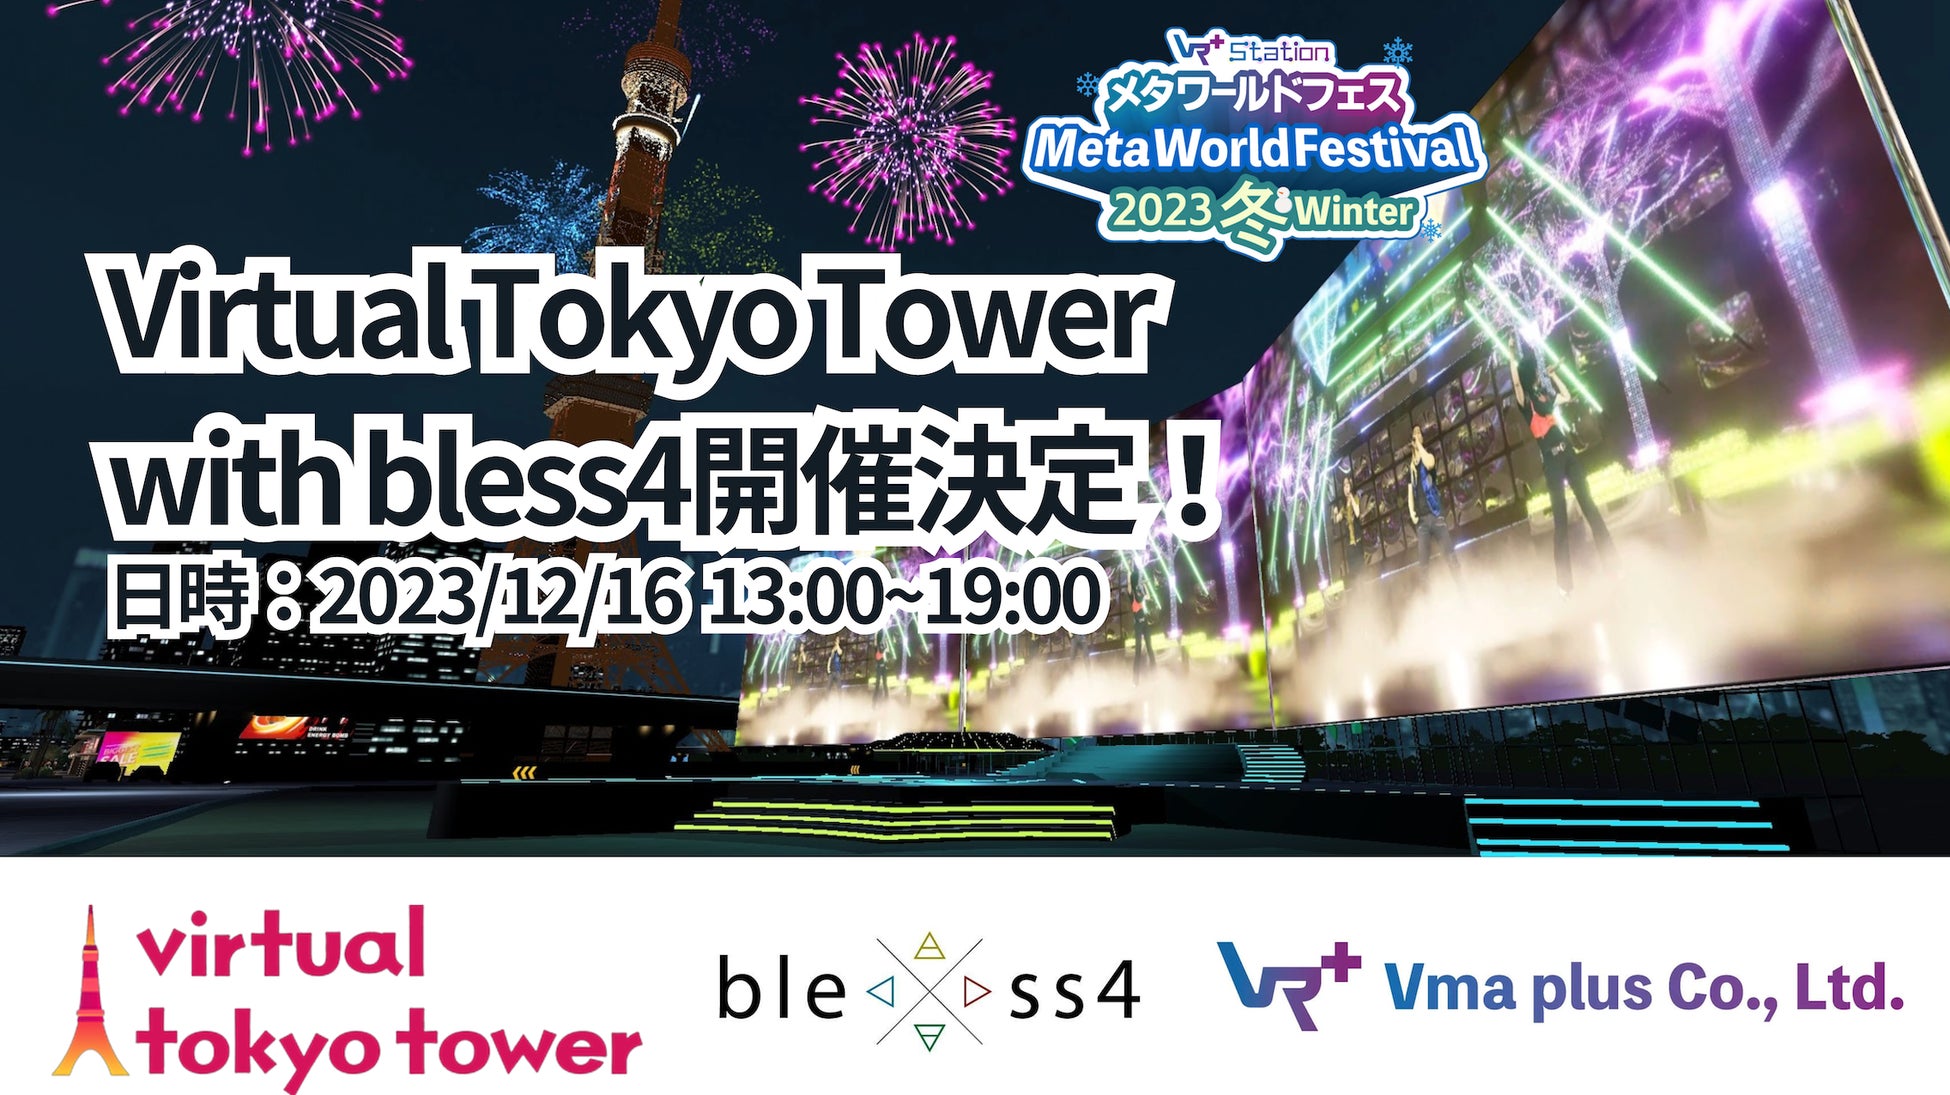 「メタ・ワールドフェス2023冬」アーティストやお笑い芸人が出演する、“Virtual Tokyo Tower with bless4”の開催が決定！